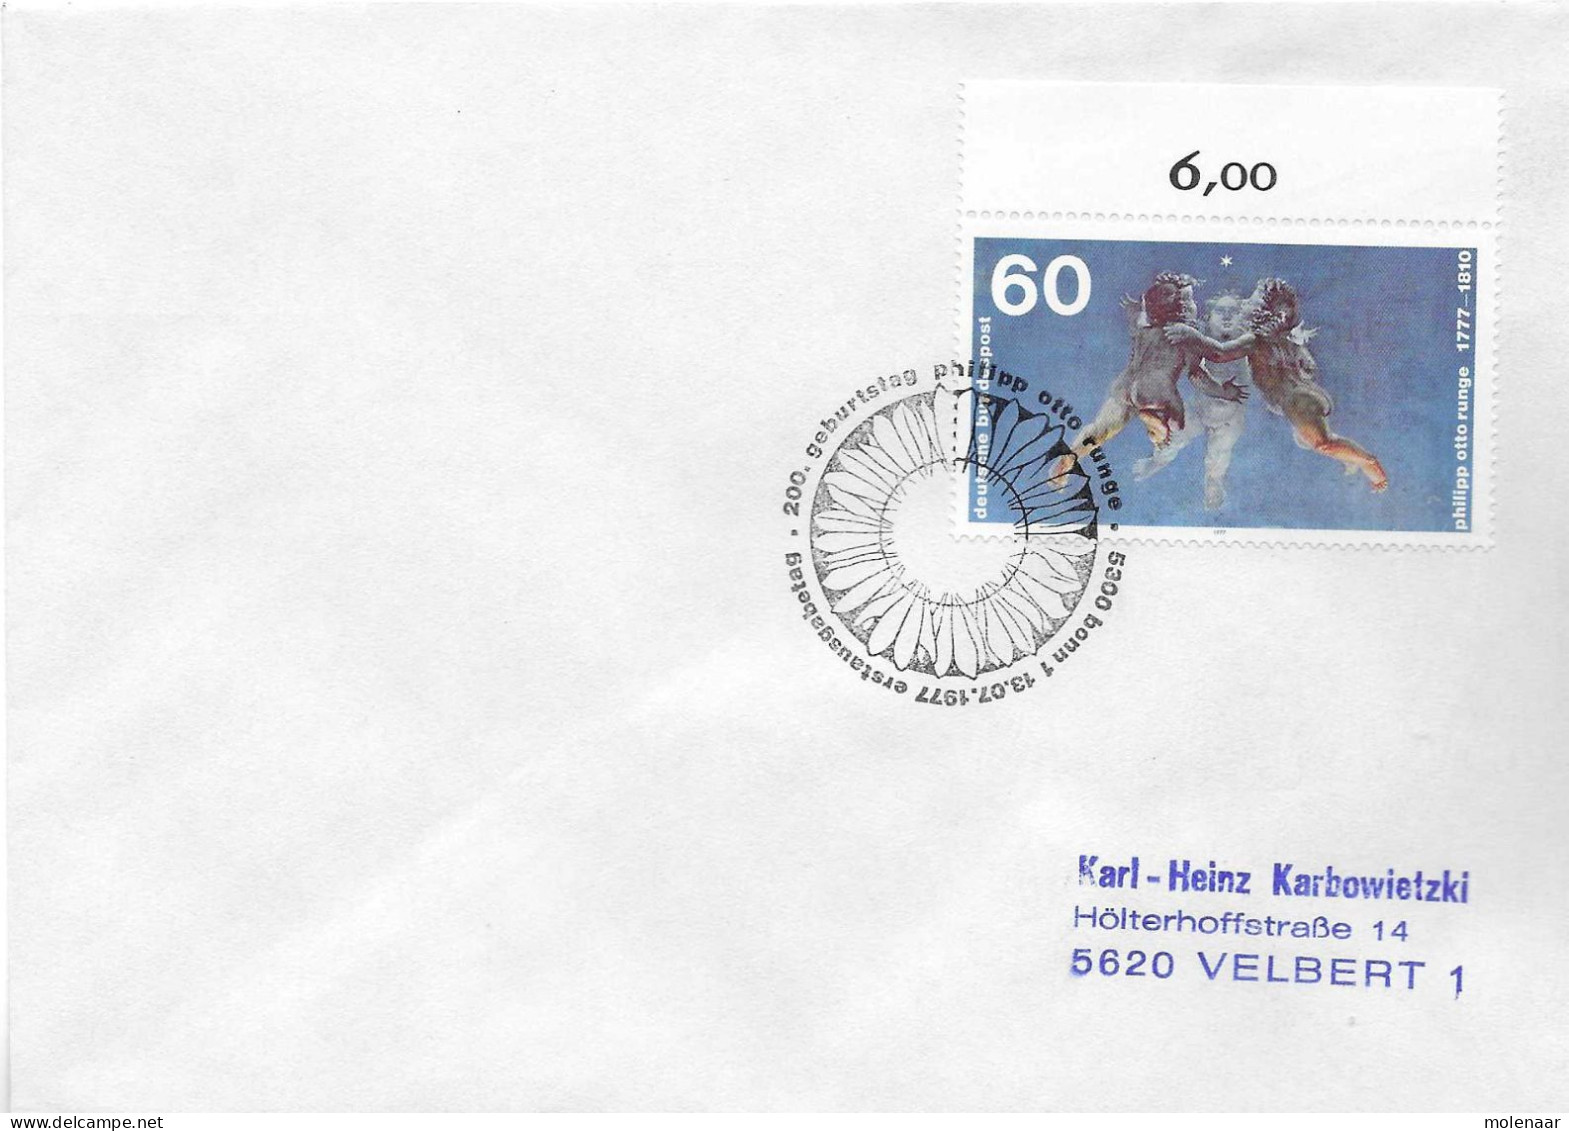 Postzegels > Europa > Duitsland > West-Duitsland > 1970-1979 > Brief Met No. 940 (17377) - Briefe U. Dokumente